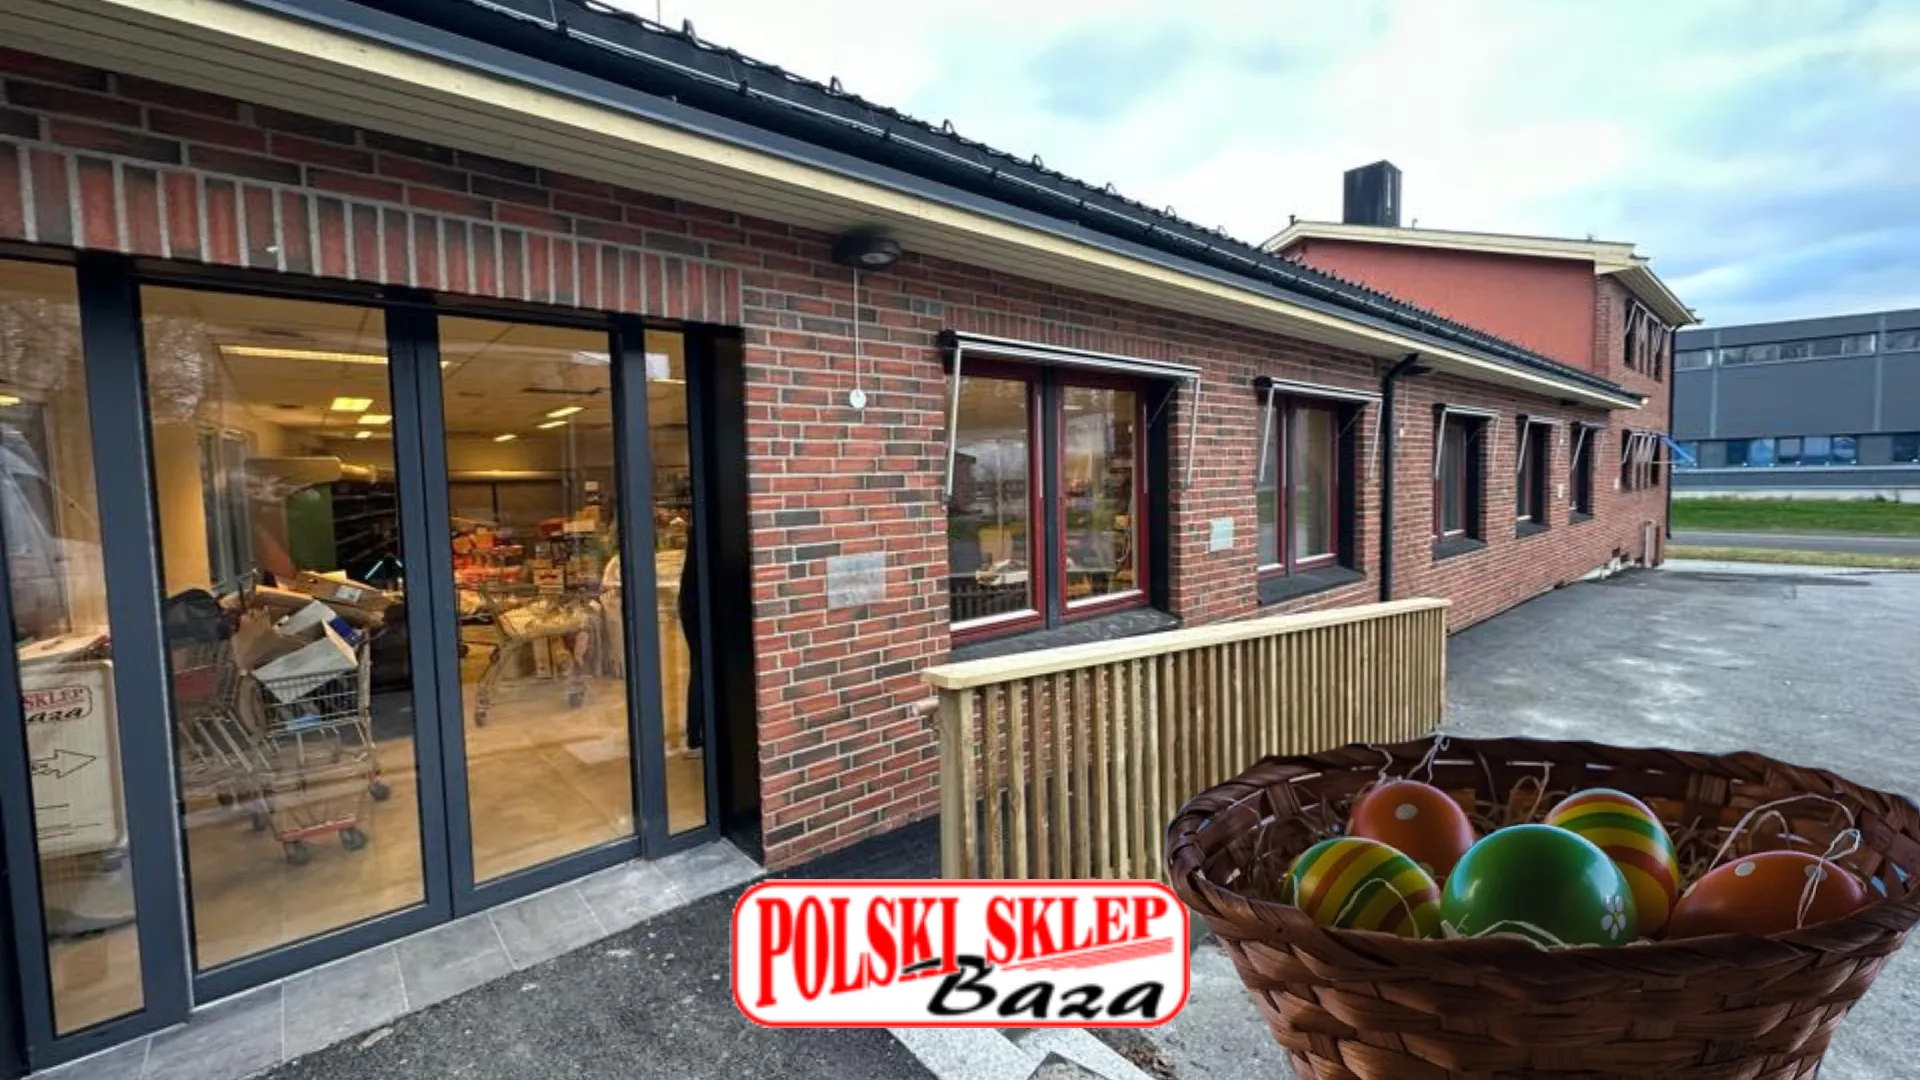 Nórsko – Ako sú otvorené obchody počas štátnych sviatkov? Poľská predajňa Baza-Ponuka potravín v Oslo a Drammen